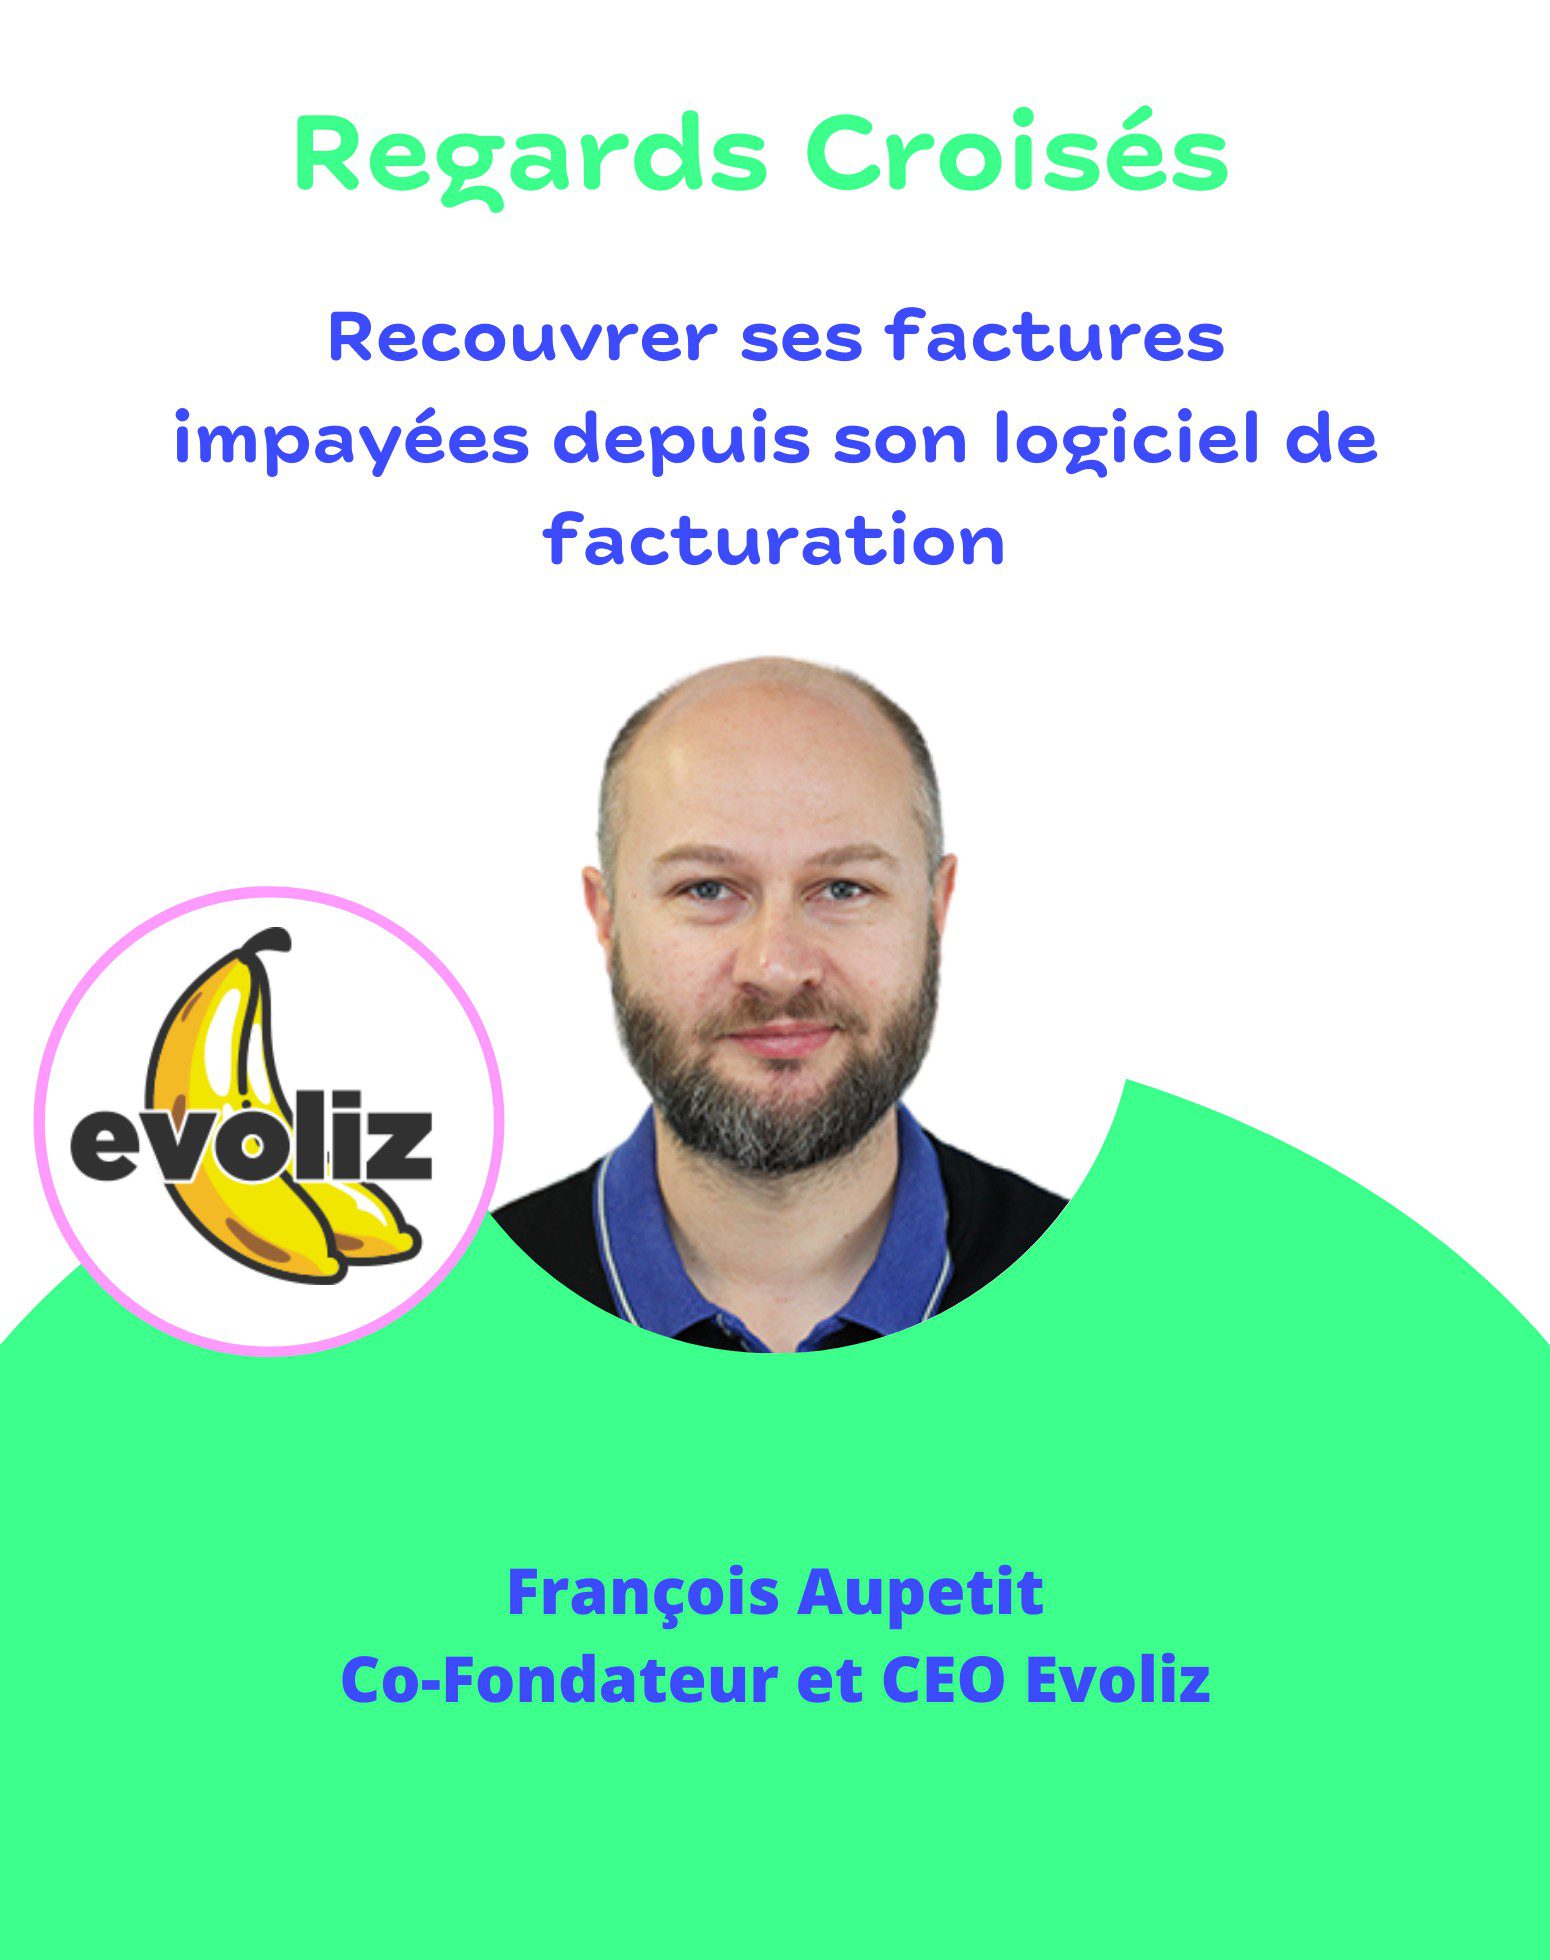 François Aupetit, co-fondateur et CEO Evoliz